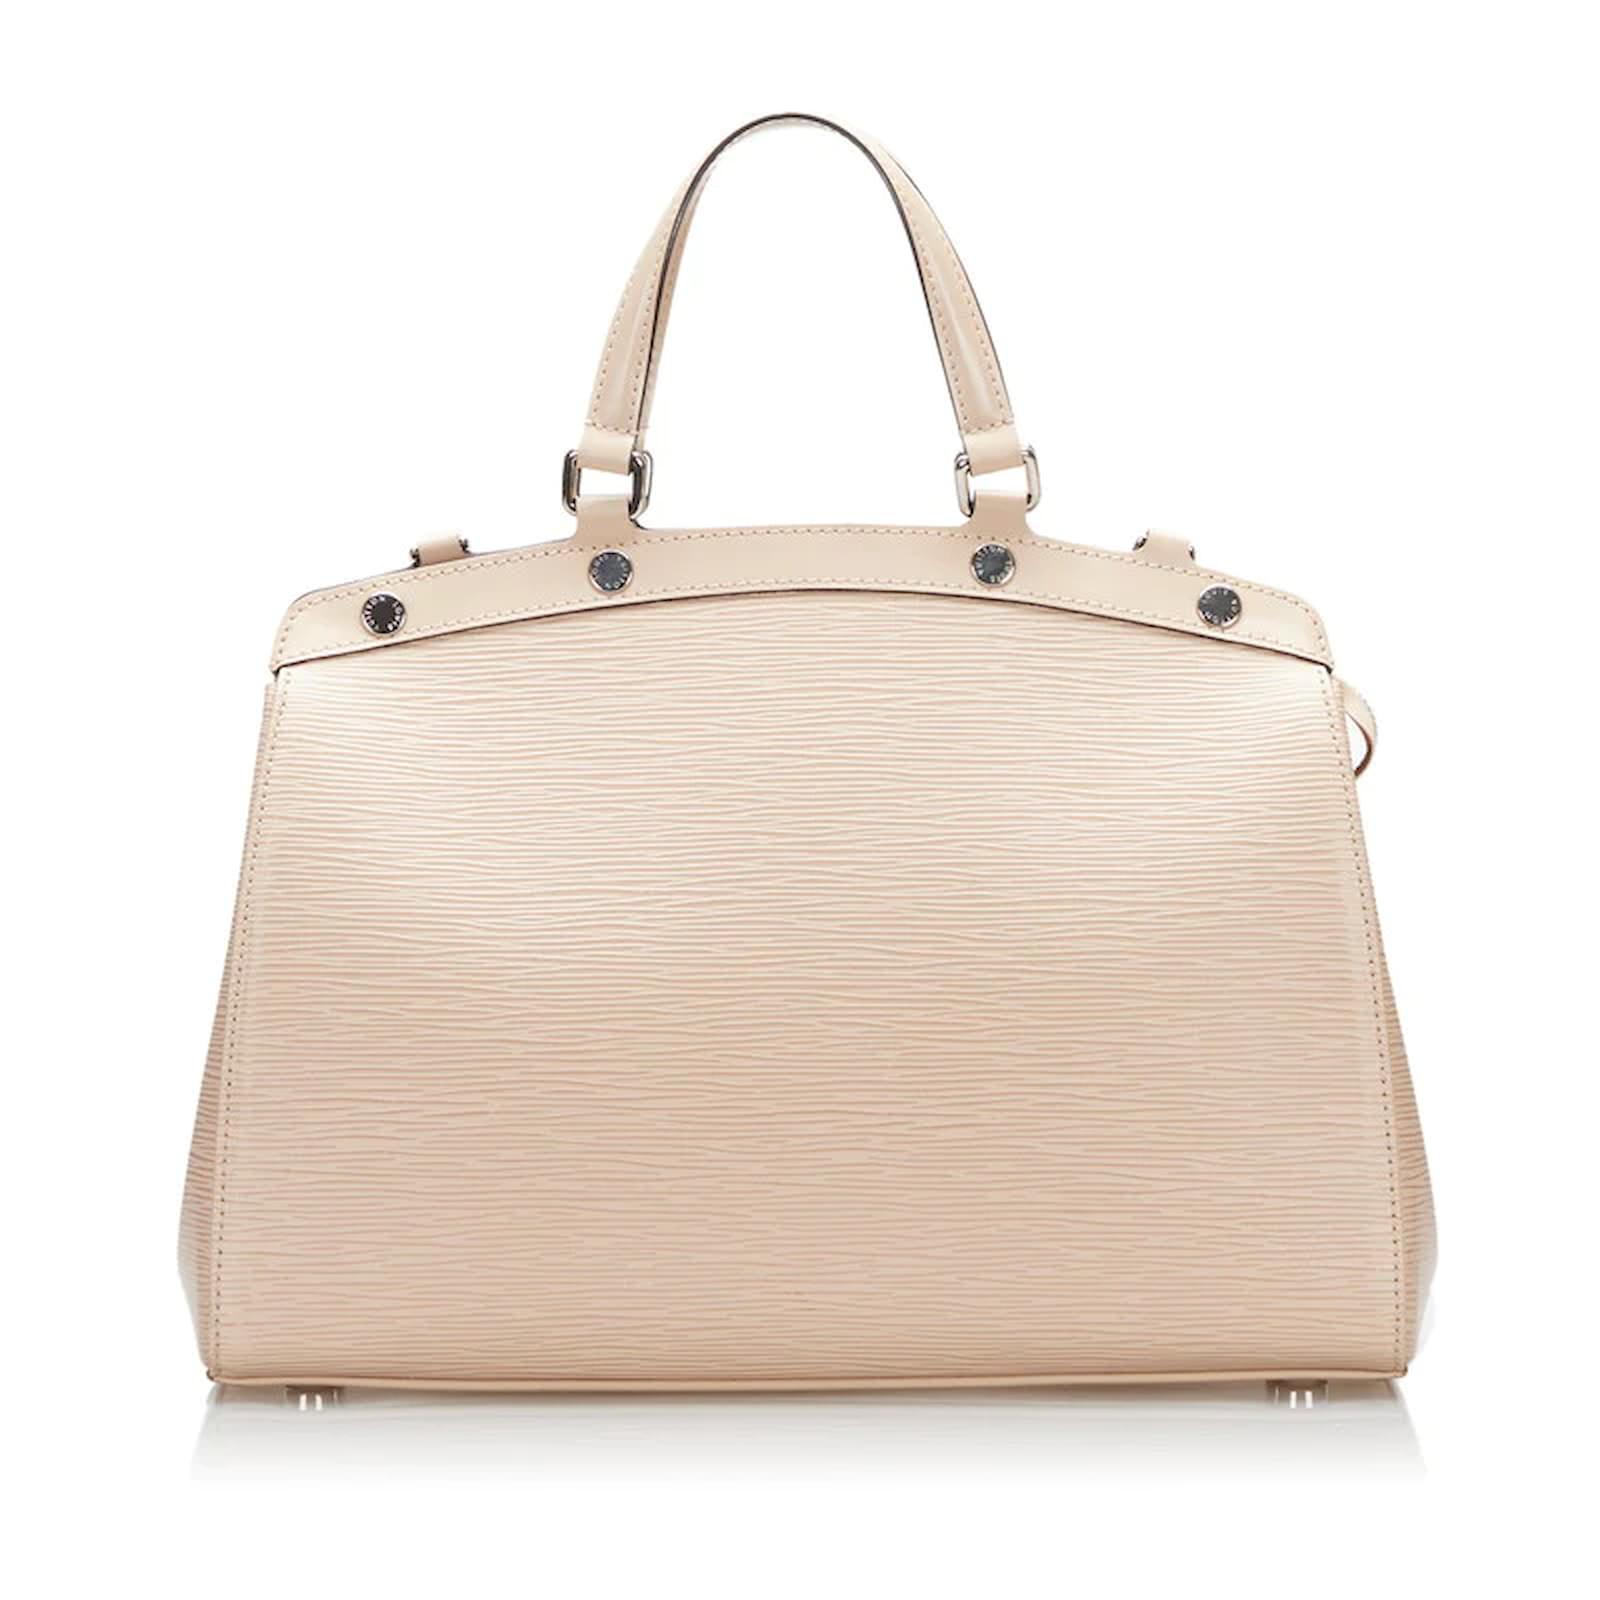 Bags, Louis Vuitton Epi Leather Brea Mm Bag